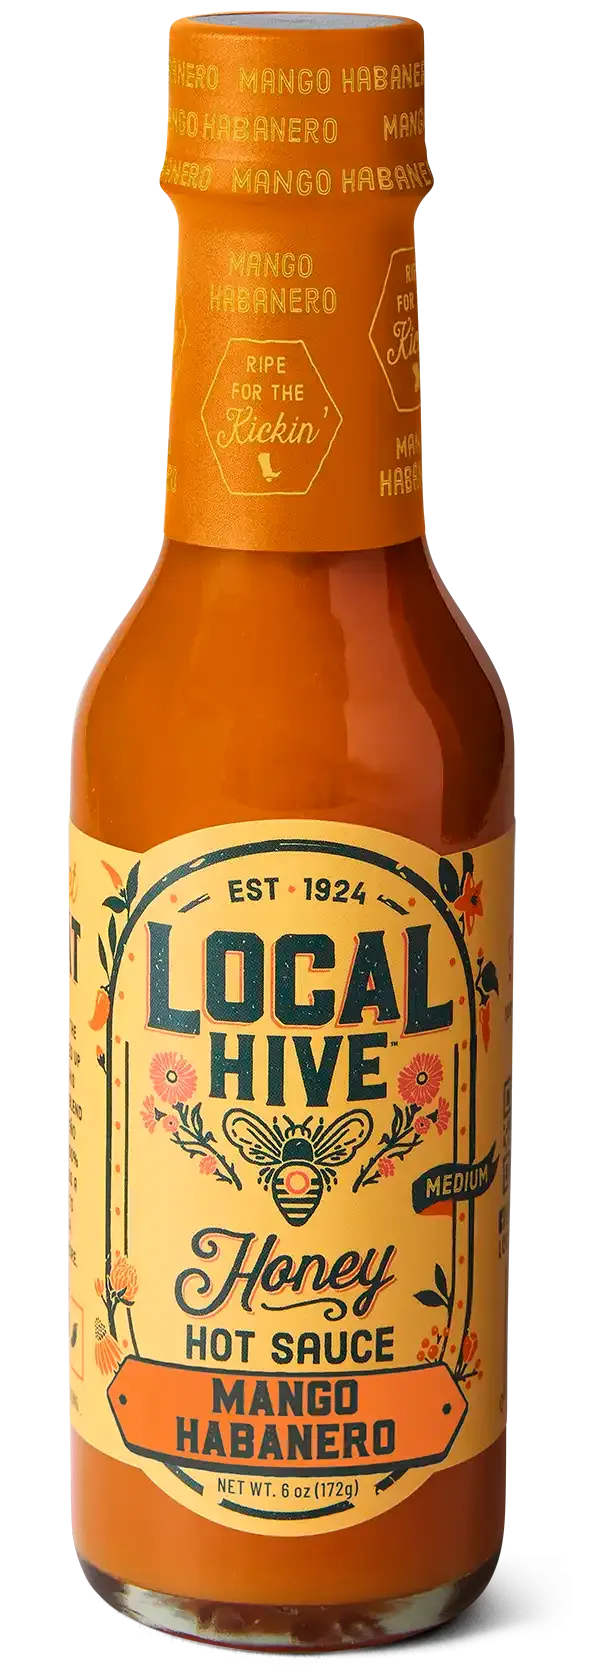 Local Hive Mango Habanero Honey Hot Sauce bottle